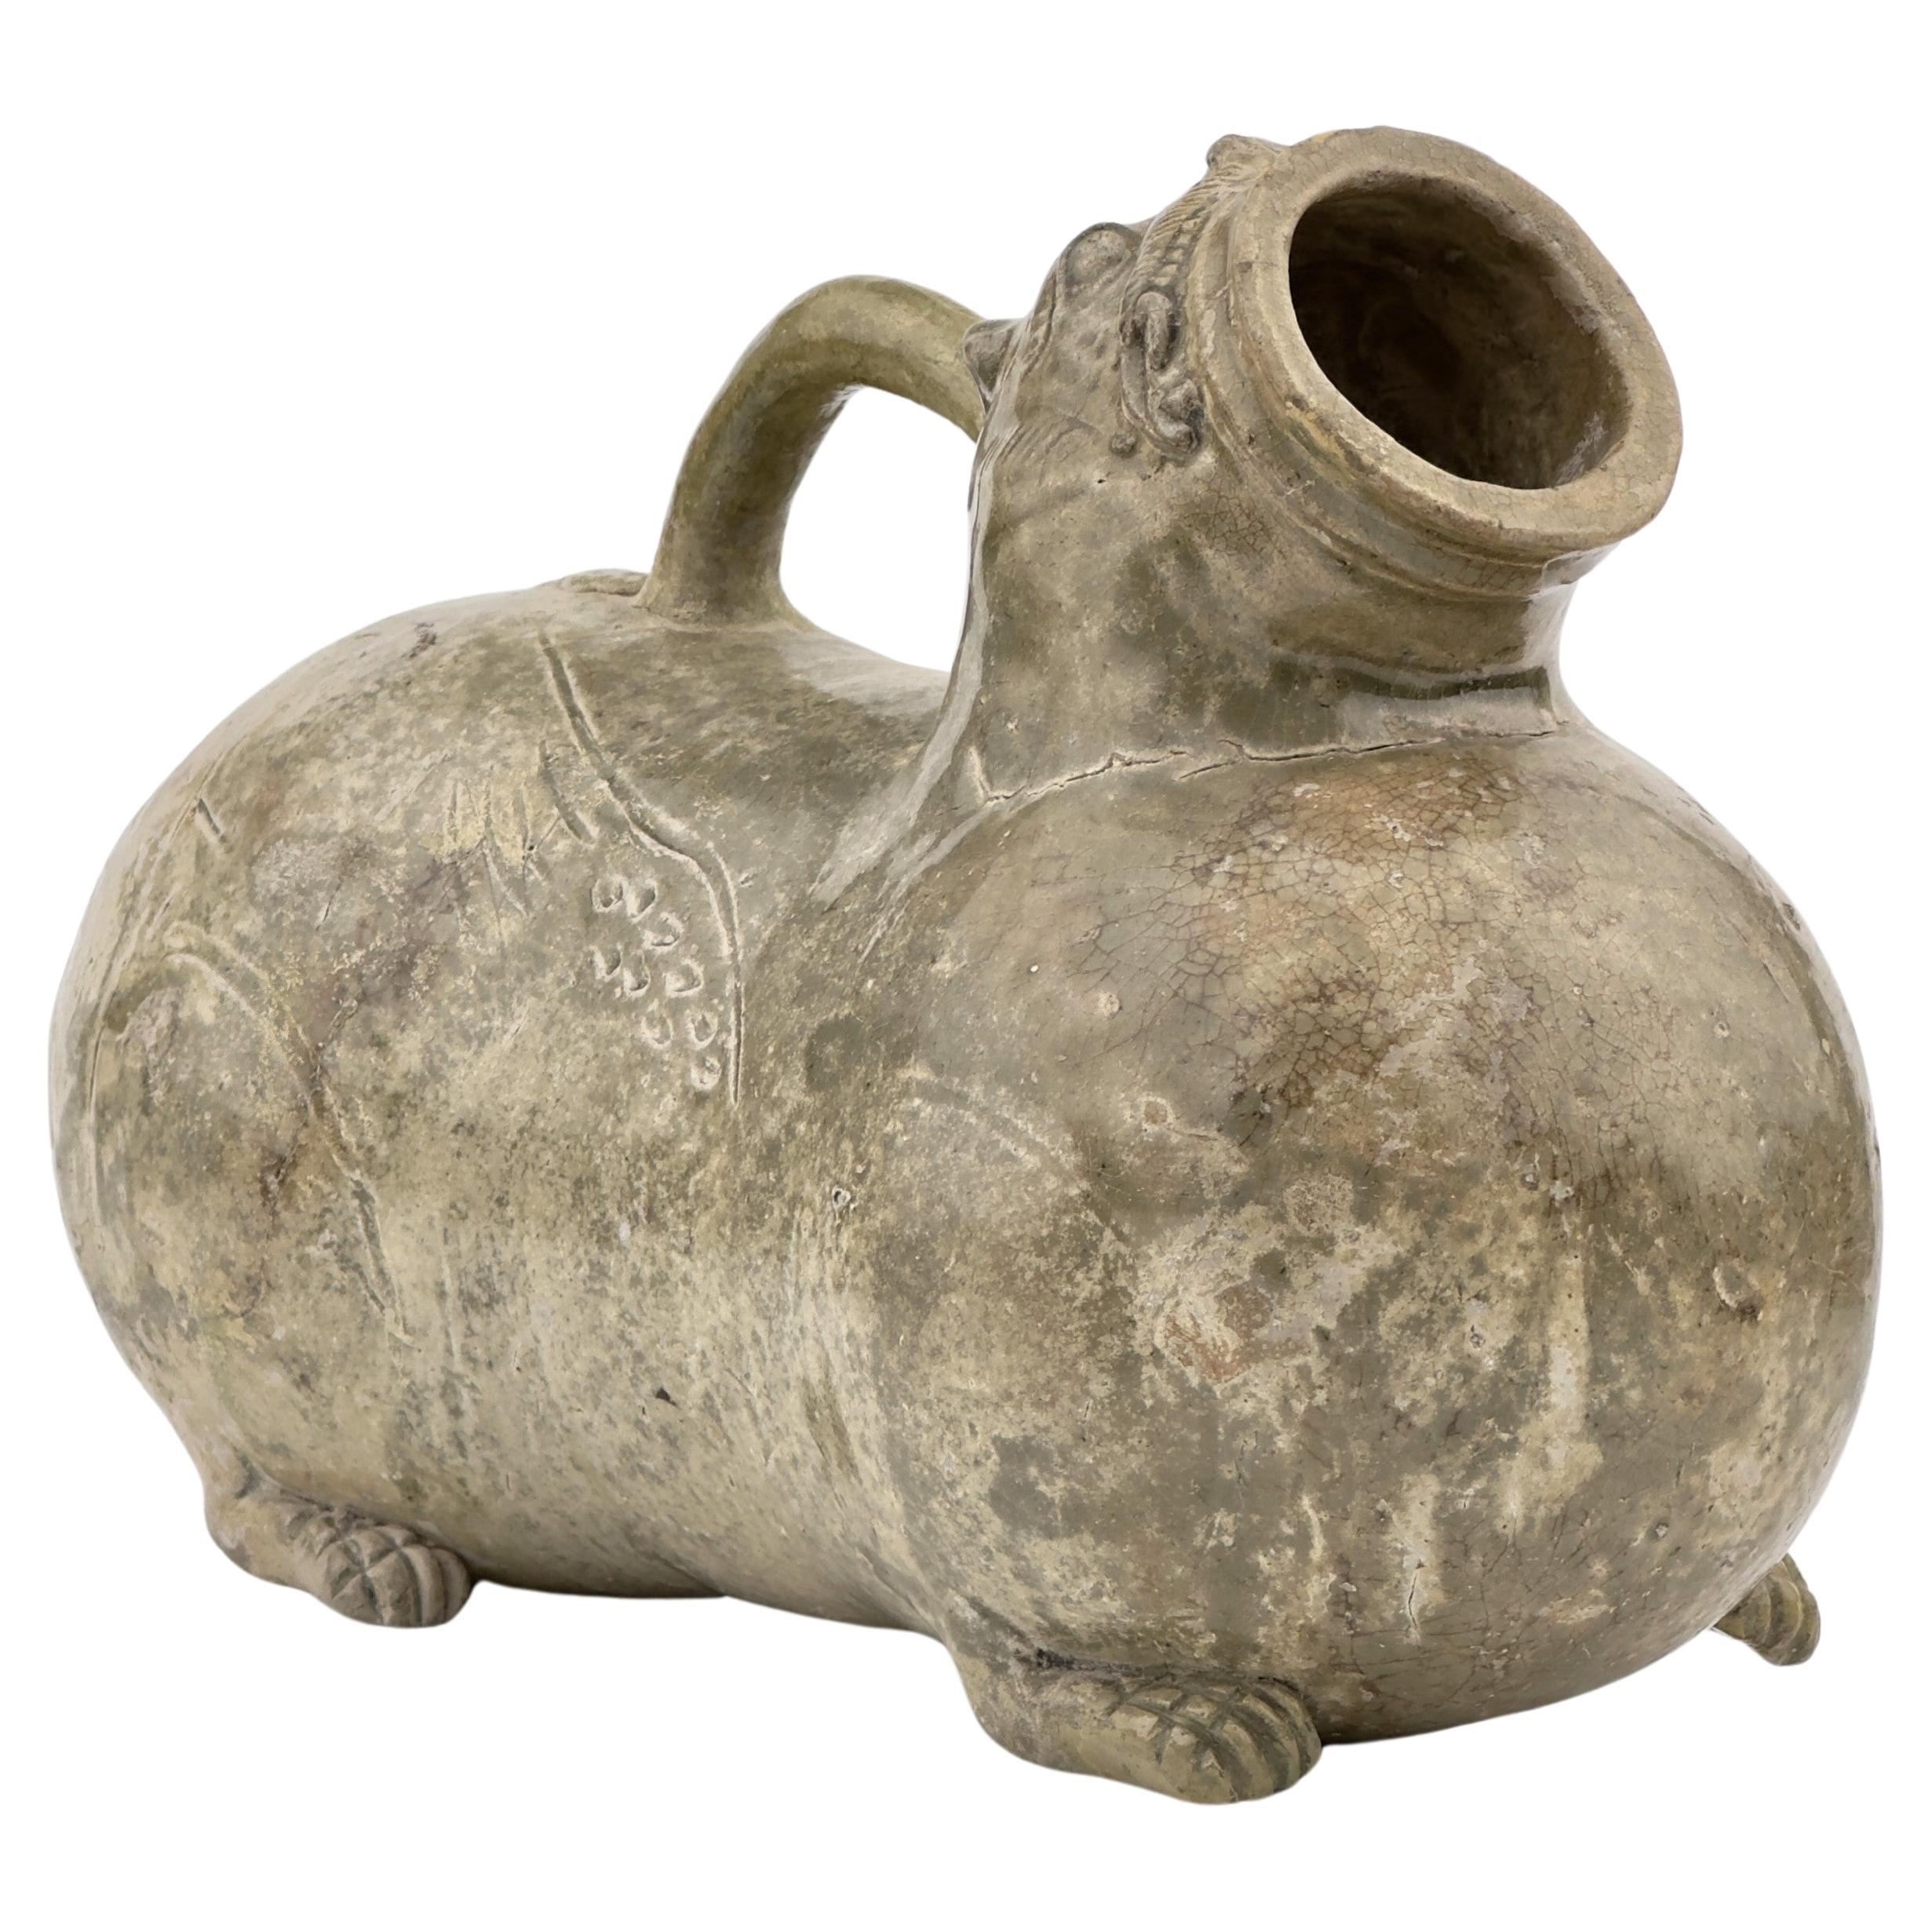 A Yue Celadon-Glazed Figural Vessel, Western Jin dynasty (265-420)